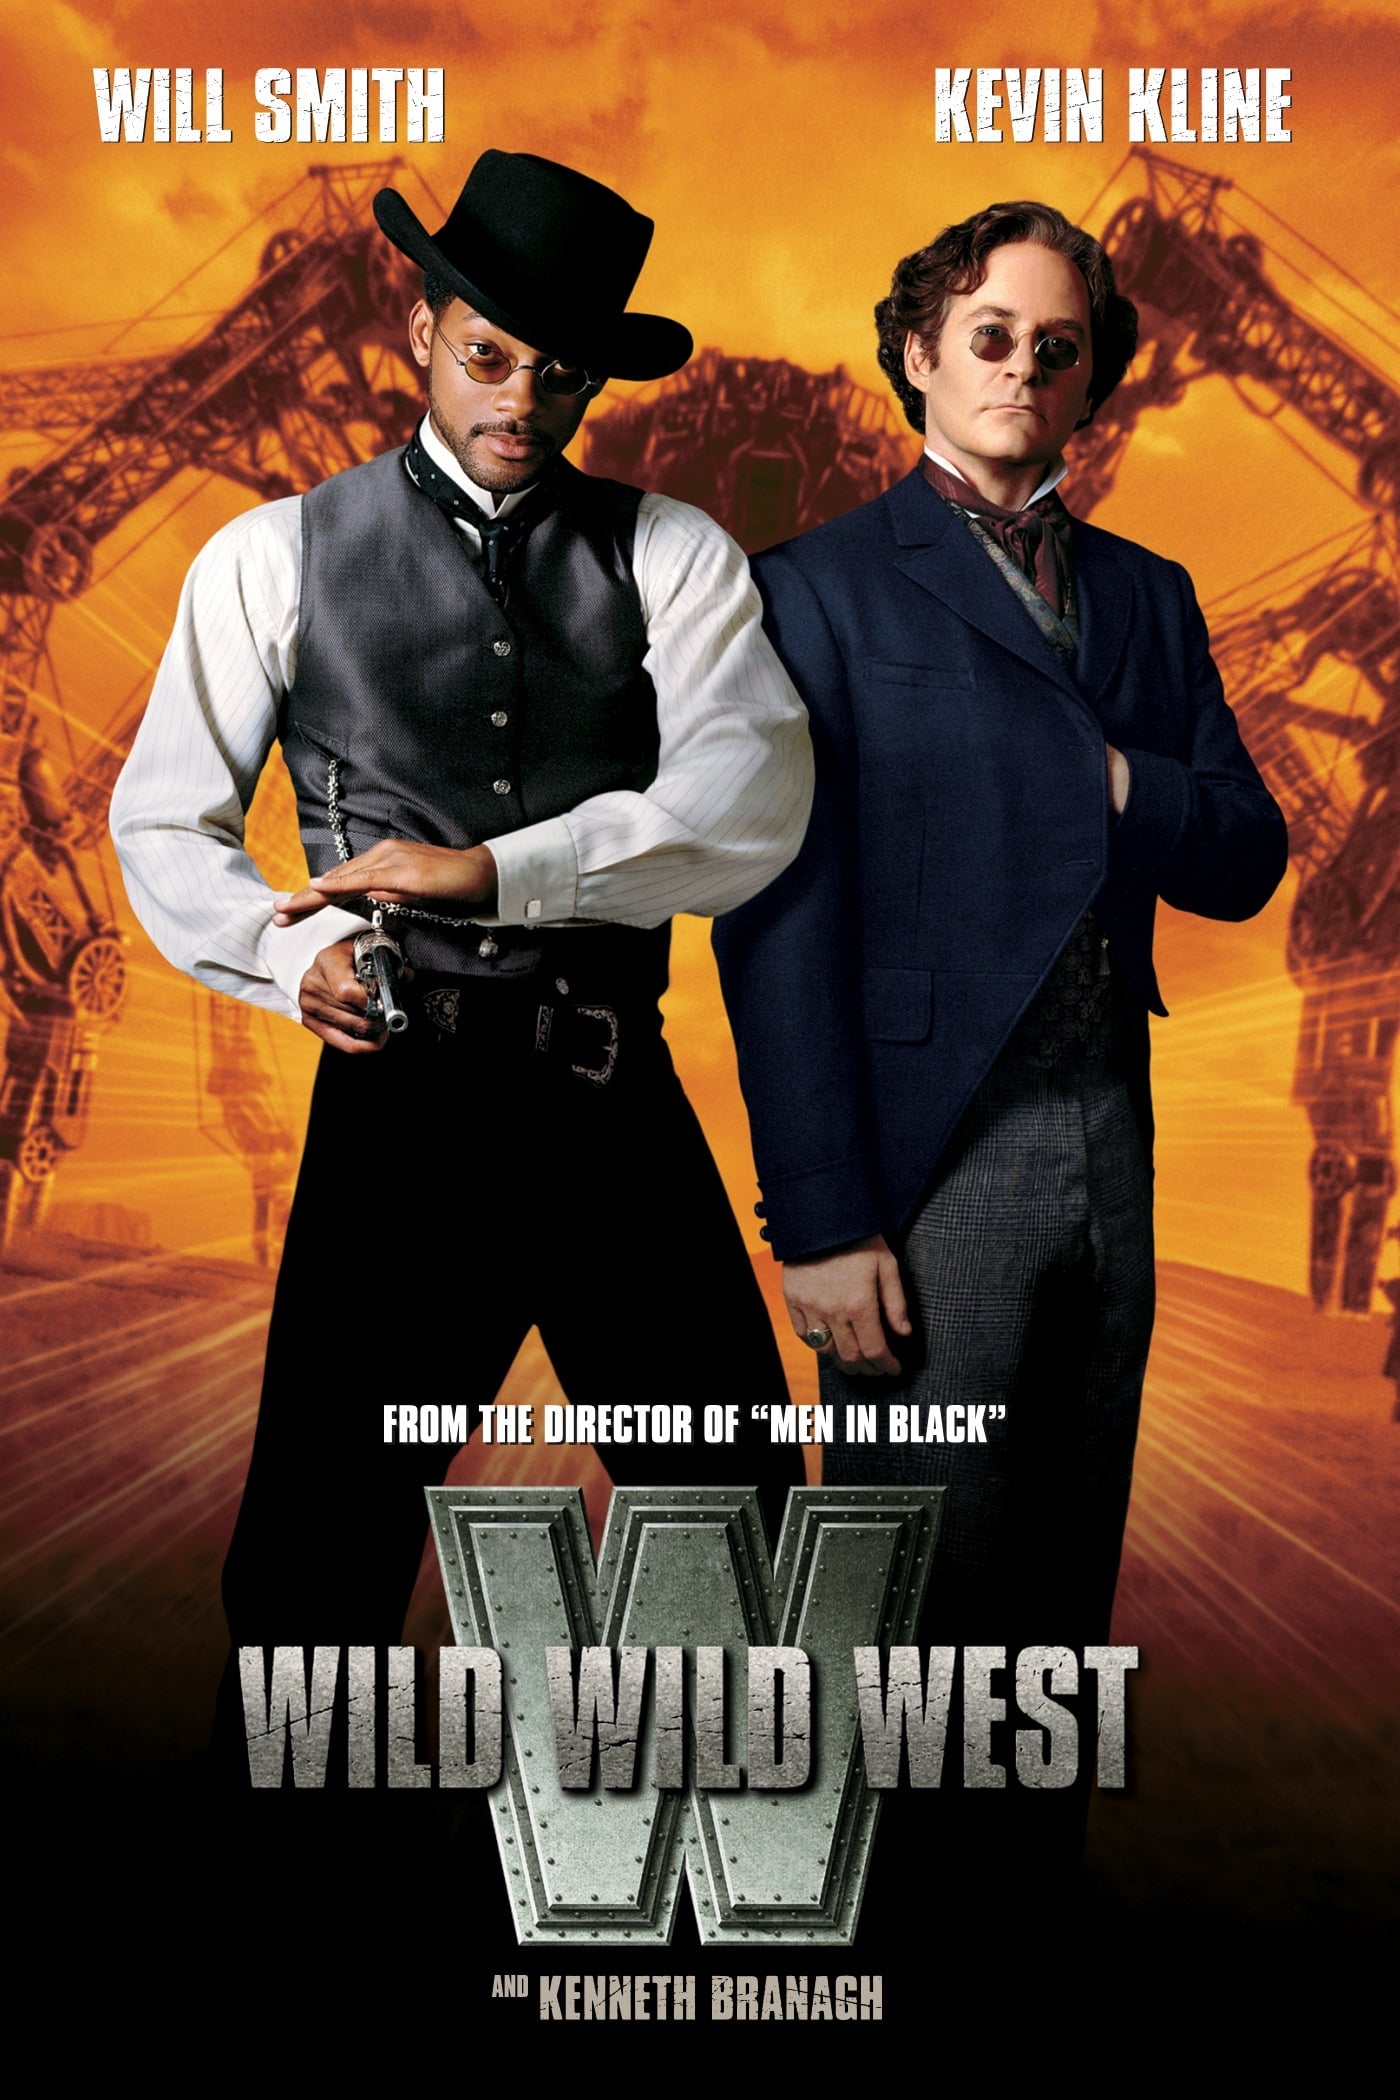 1999 Wild Wild West